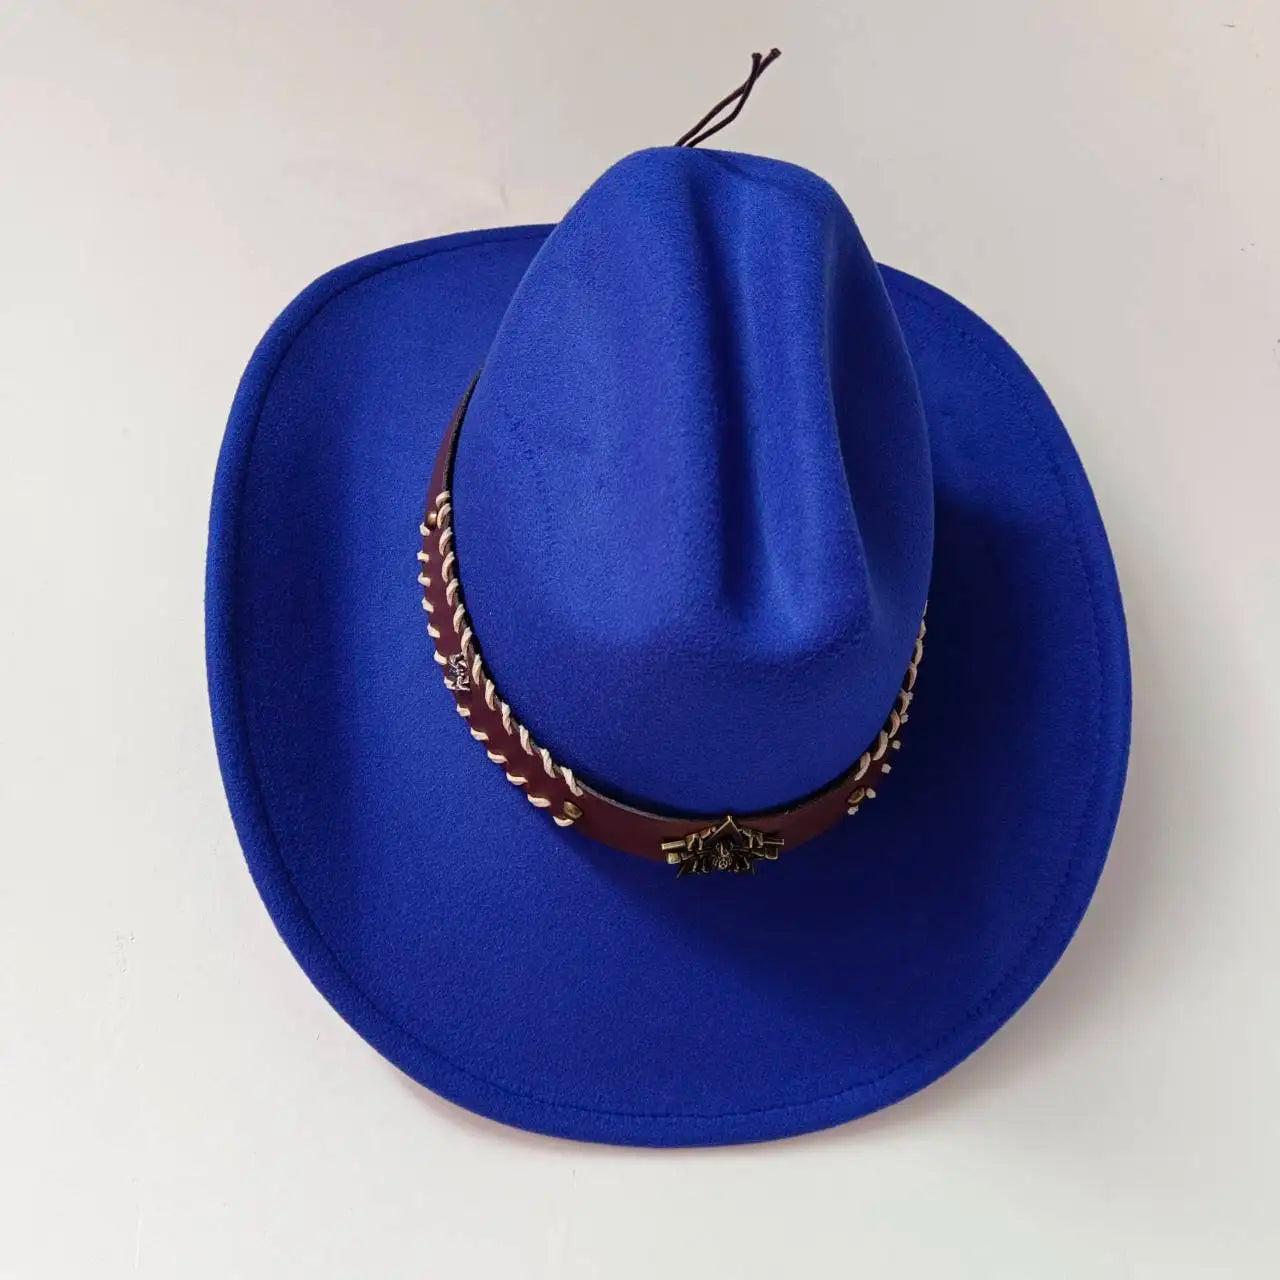 Chapeau Cowboy - CanyonCouture - La Maison du Chapeau